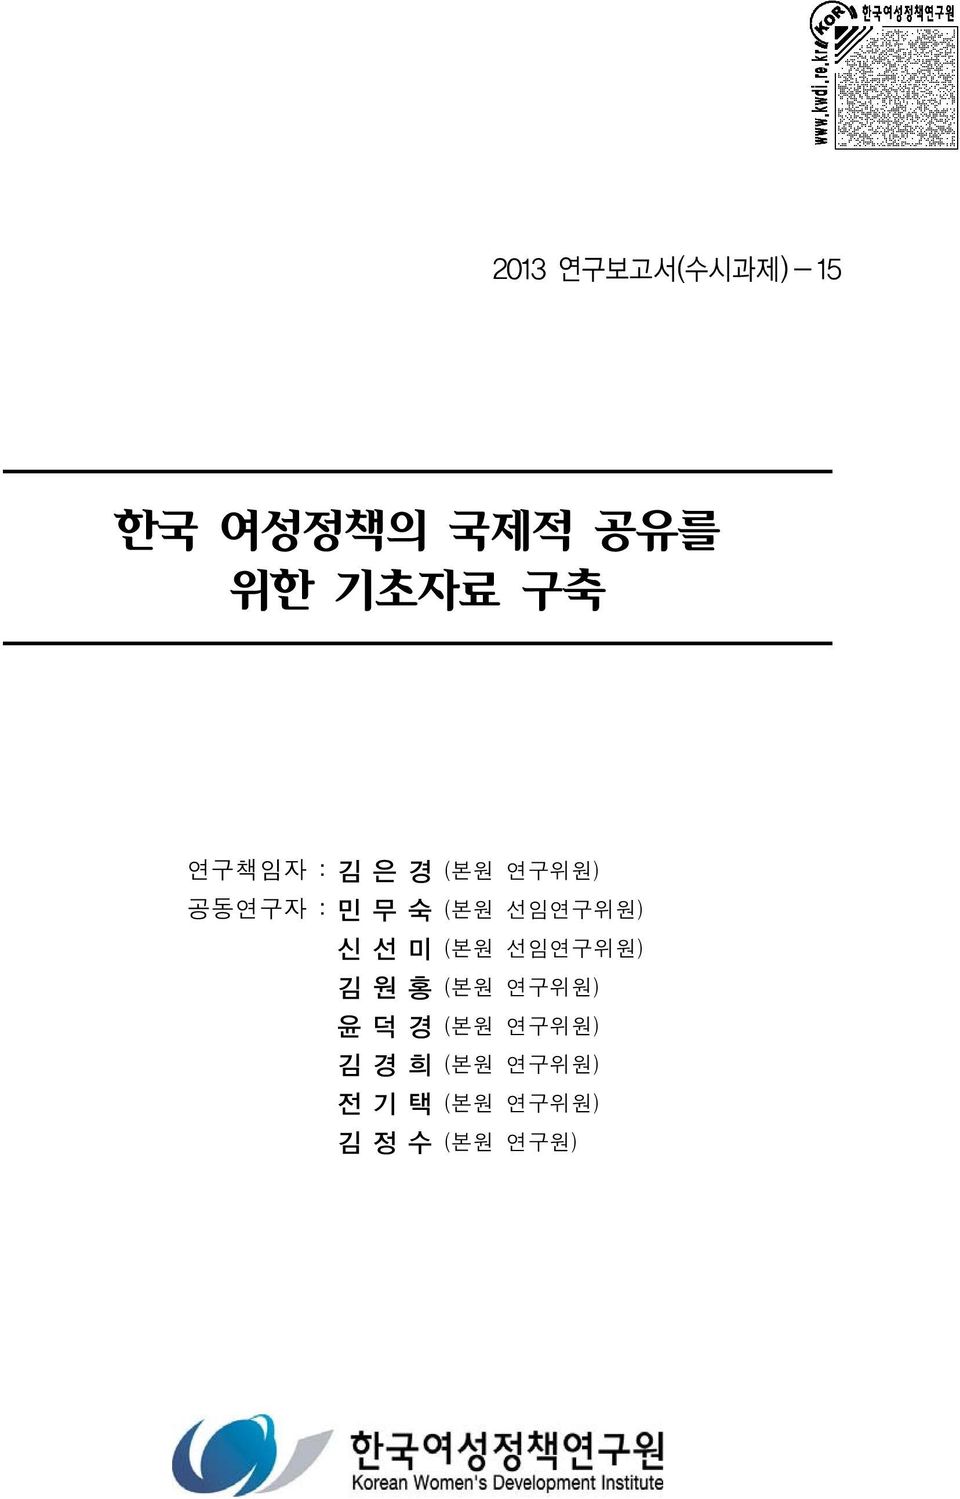 선임연구위원) 신선미 (본원 선임연구위원) 김원홍 (본원 연구위원) 윤덕경